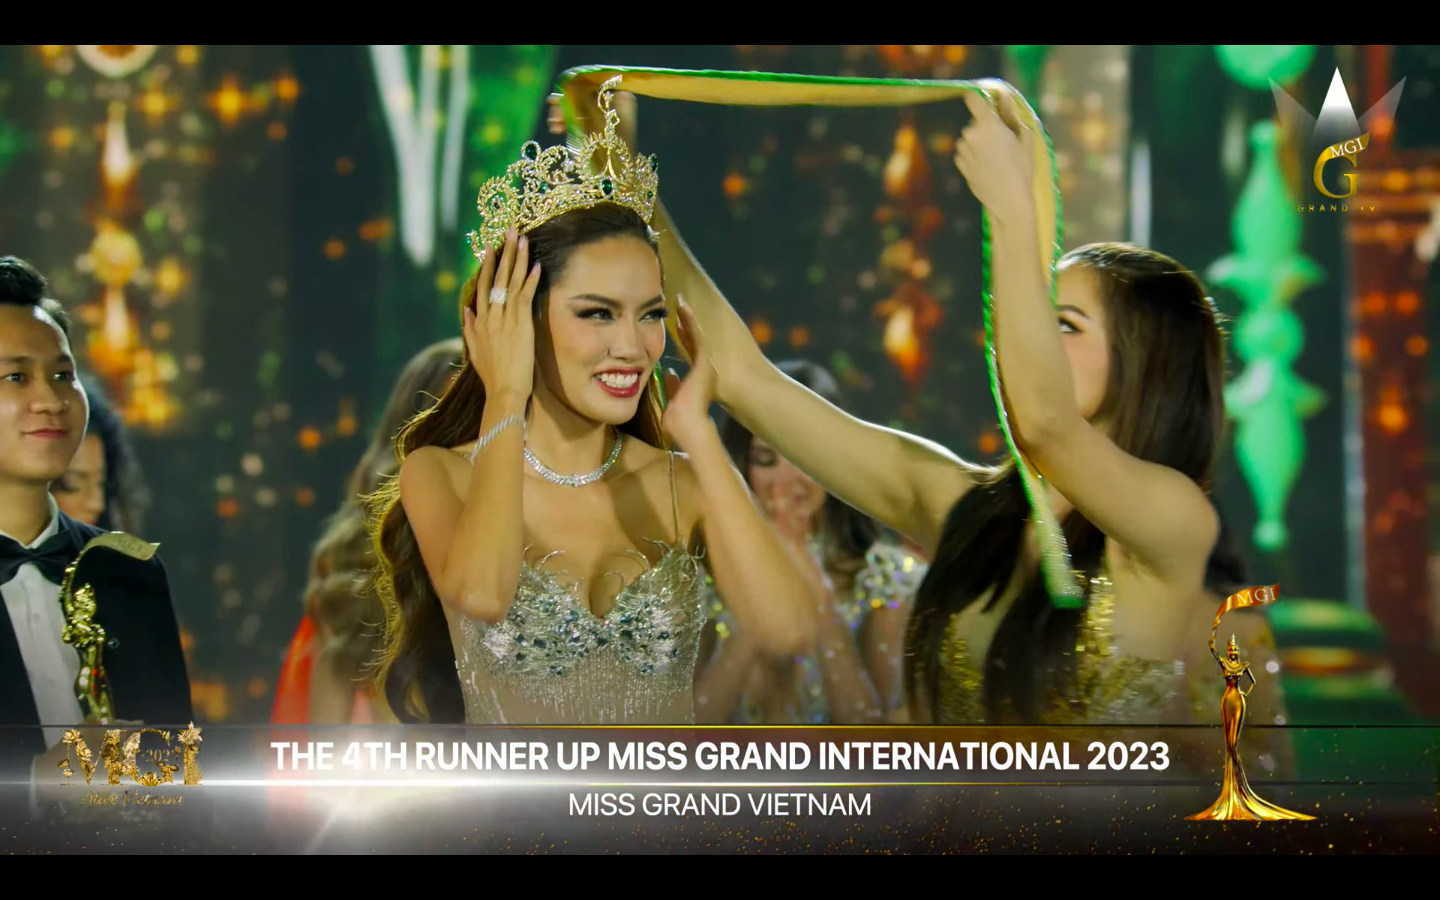 Lê Hoàng Phương dừng chân ở vị trí Á hậu 4 Miss Grand International 2023 - ảnh 2